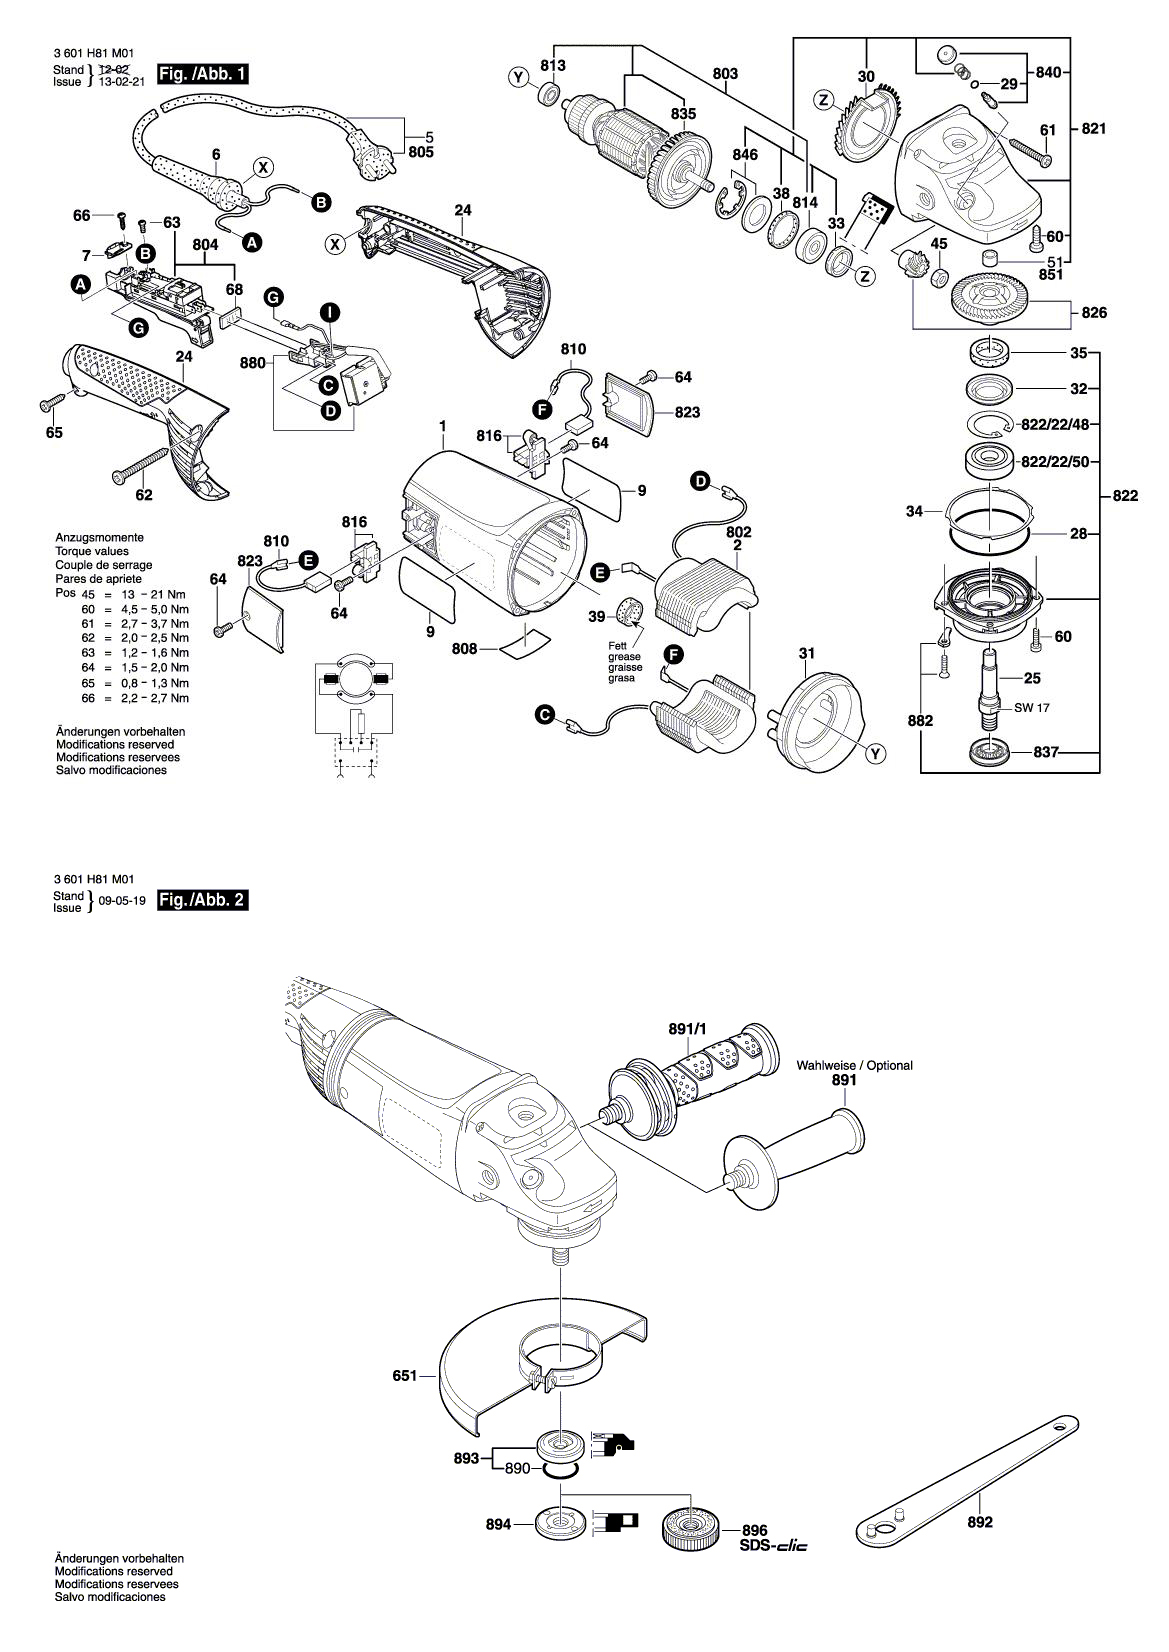 Схема на Угловая шлифмашина Bosch GWS 230 JH (3 601 H82 M02)